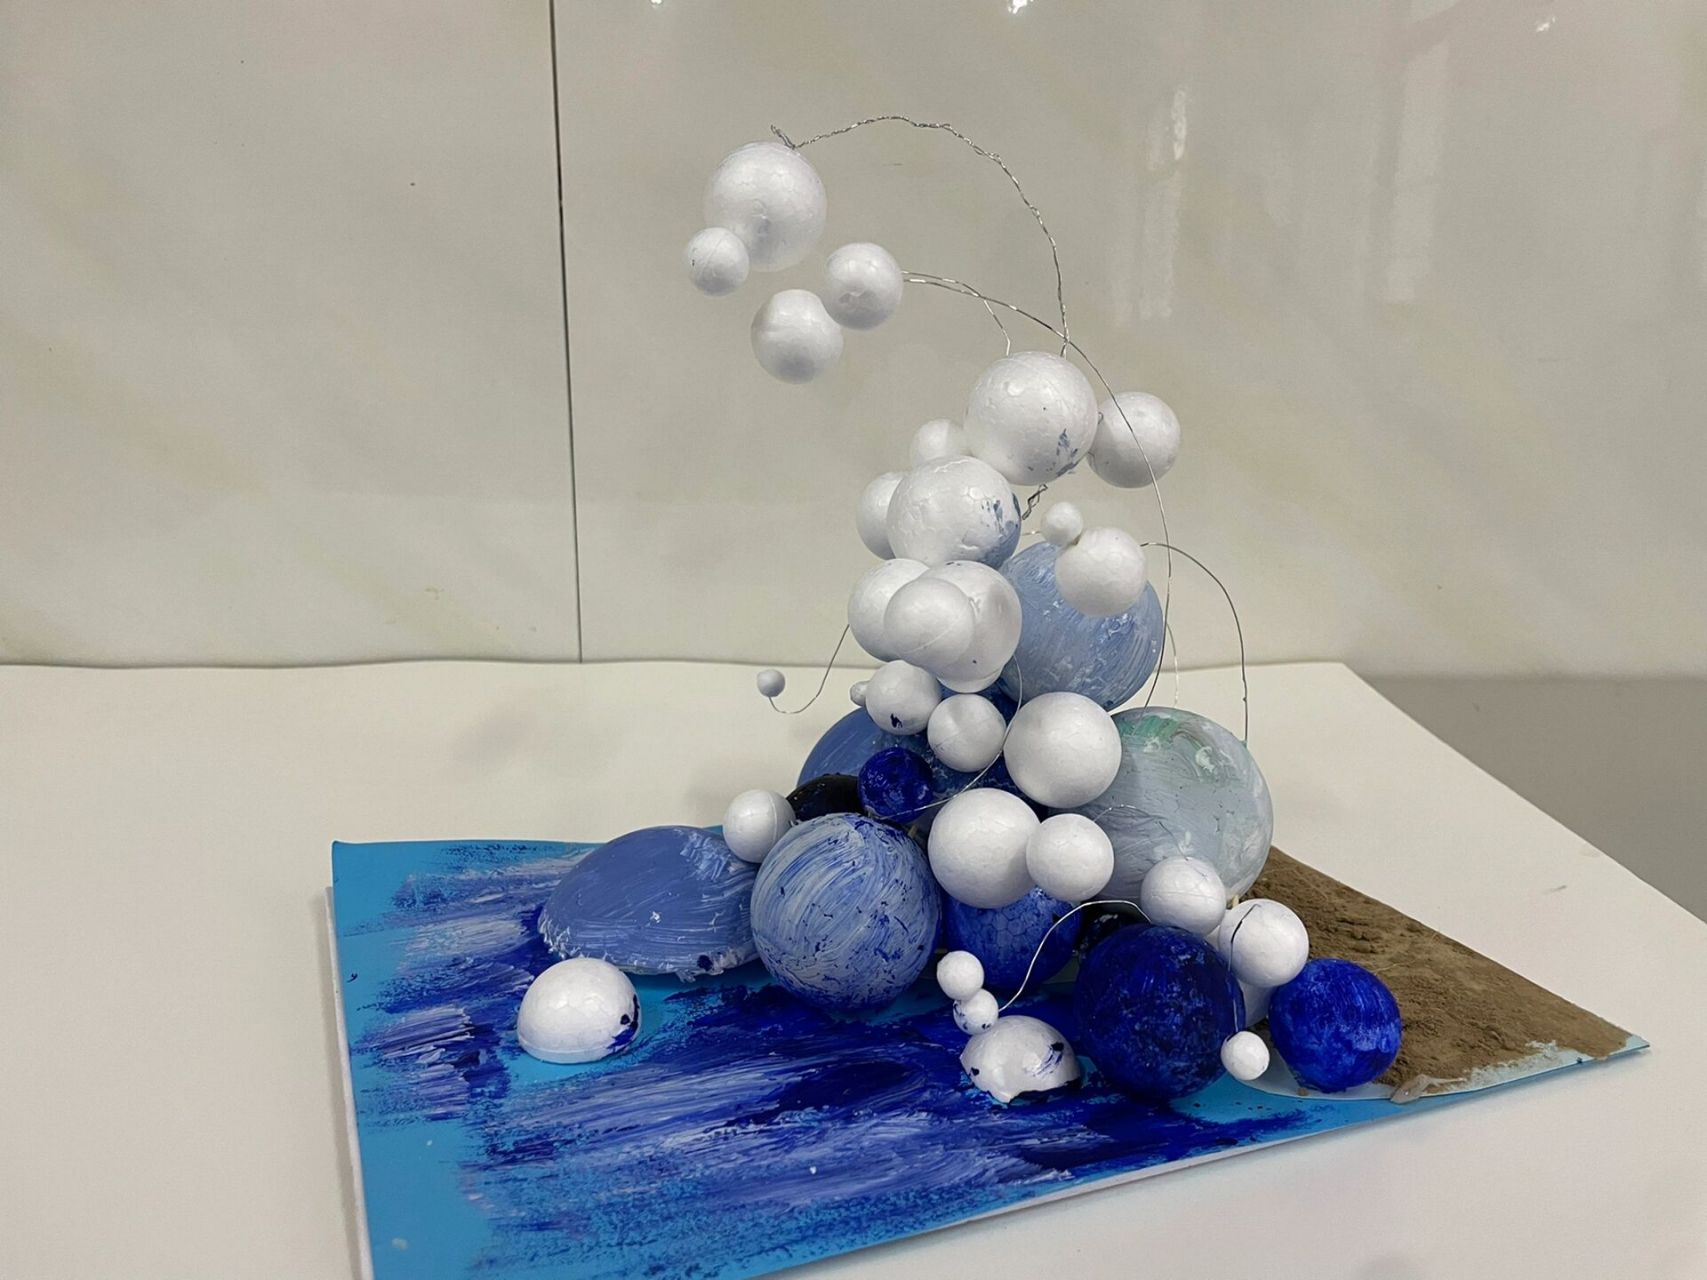 分享点的立体构成作业 泡沫球抽象浪花,做的略粗糙 发现泡沫球用水粉